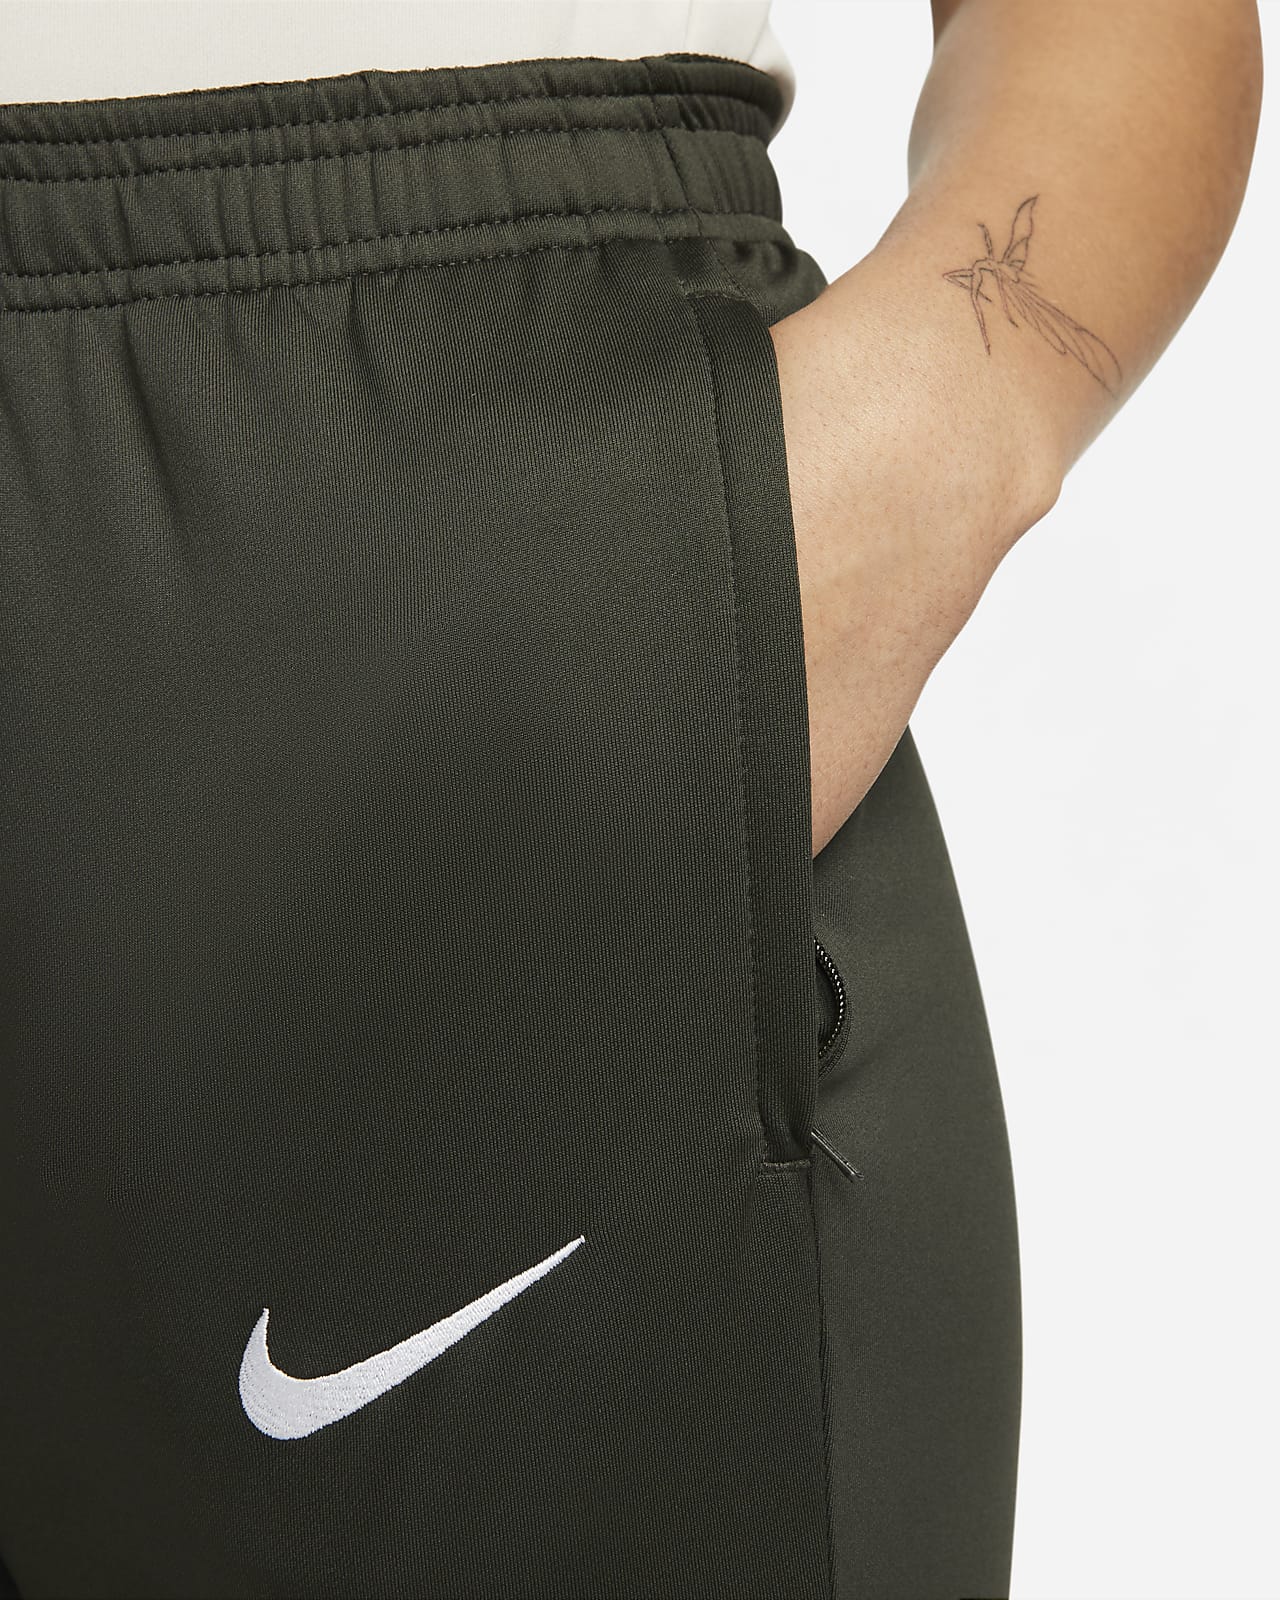 Nike Women's Dri-FIT Strike Soccer Pants